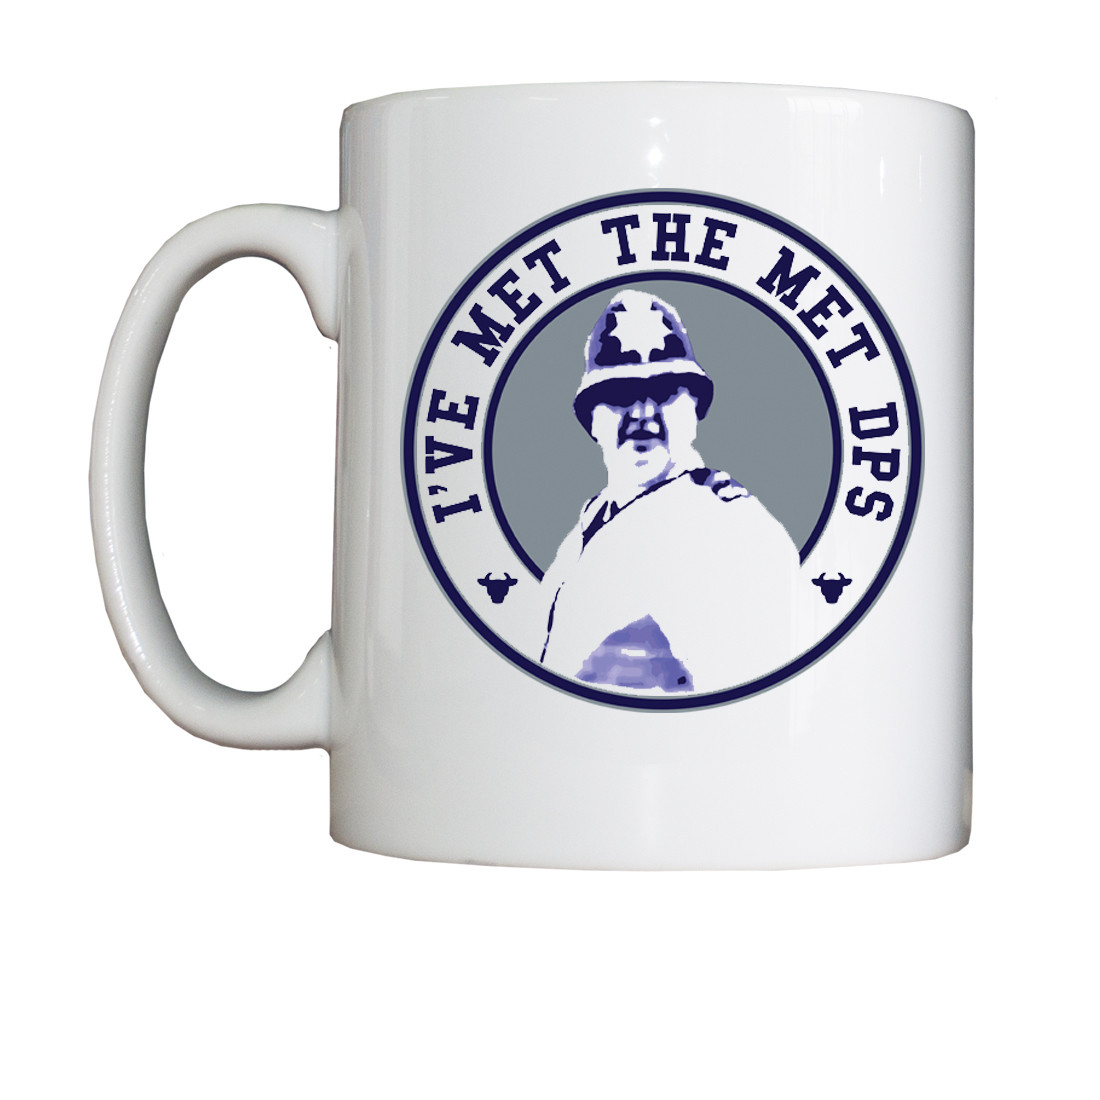 Personalised 'I've Met The Met DPS' Drinking Vessel (Mug)